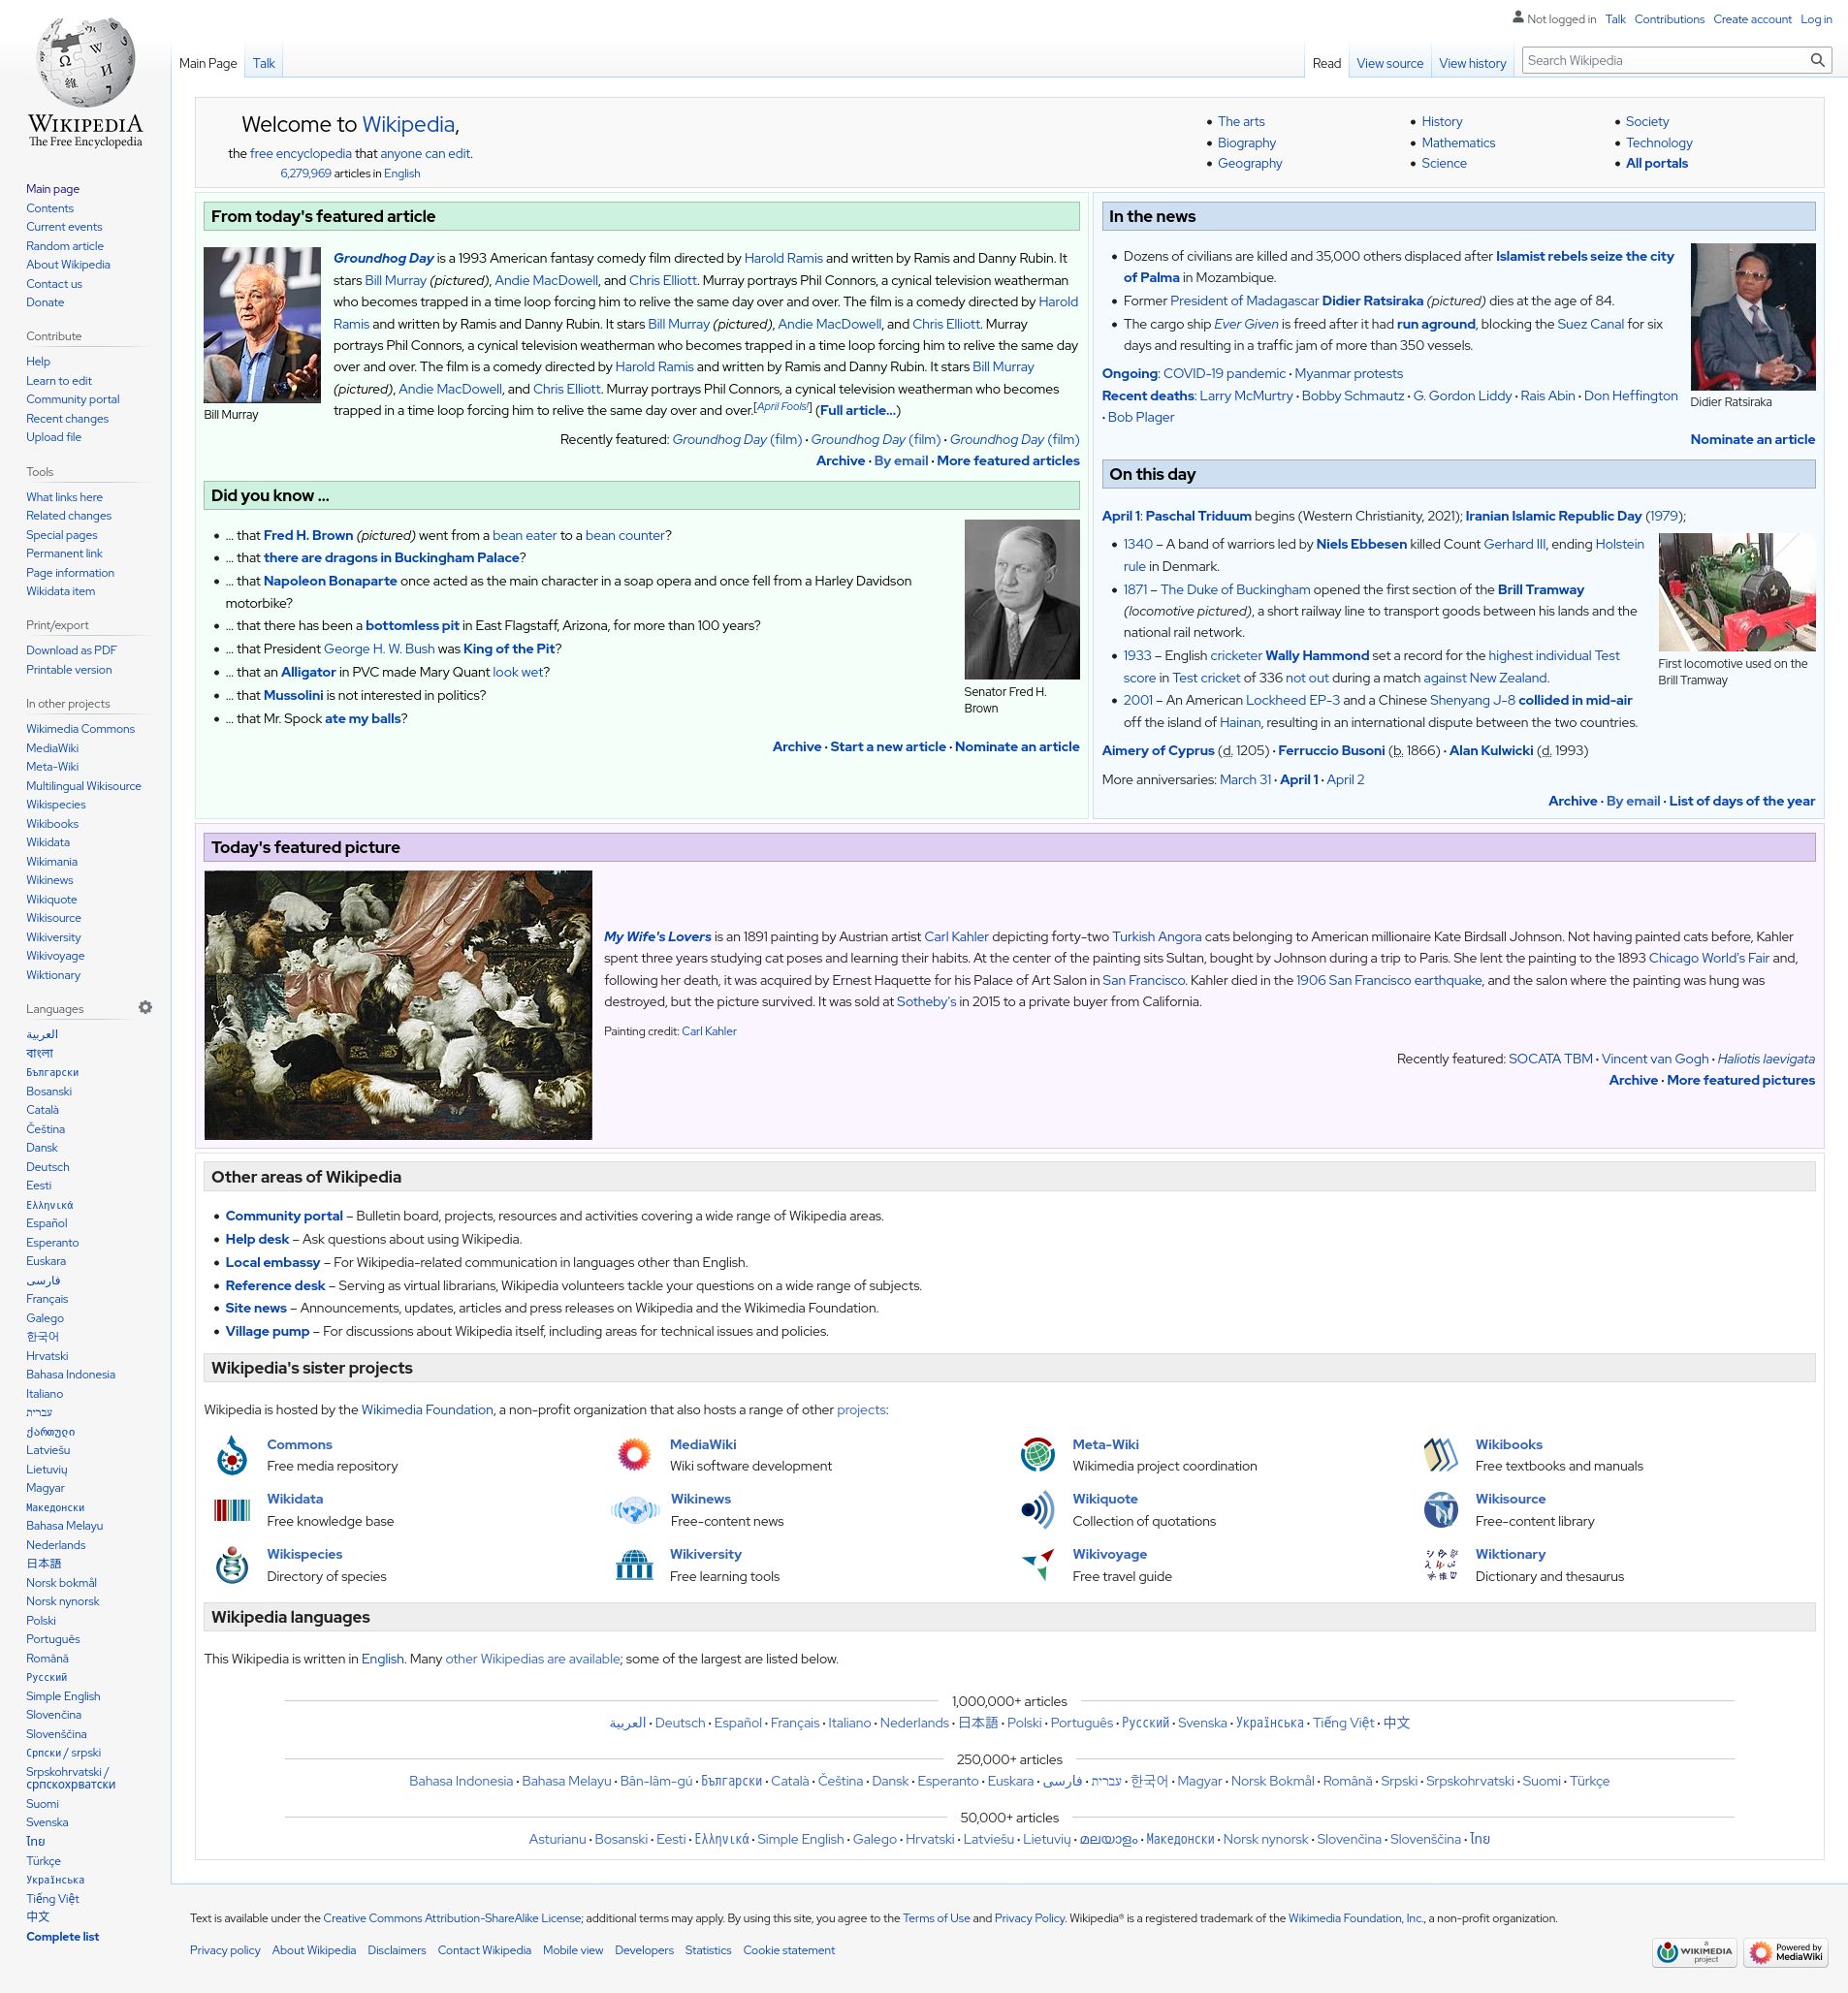 Wikimedia Apps/Team/iOS - MediaWiki